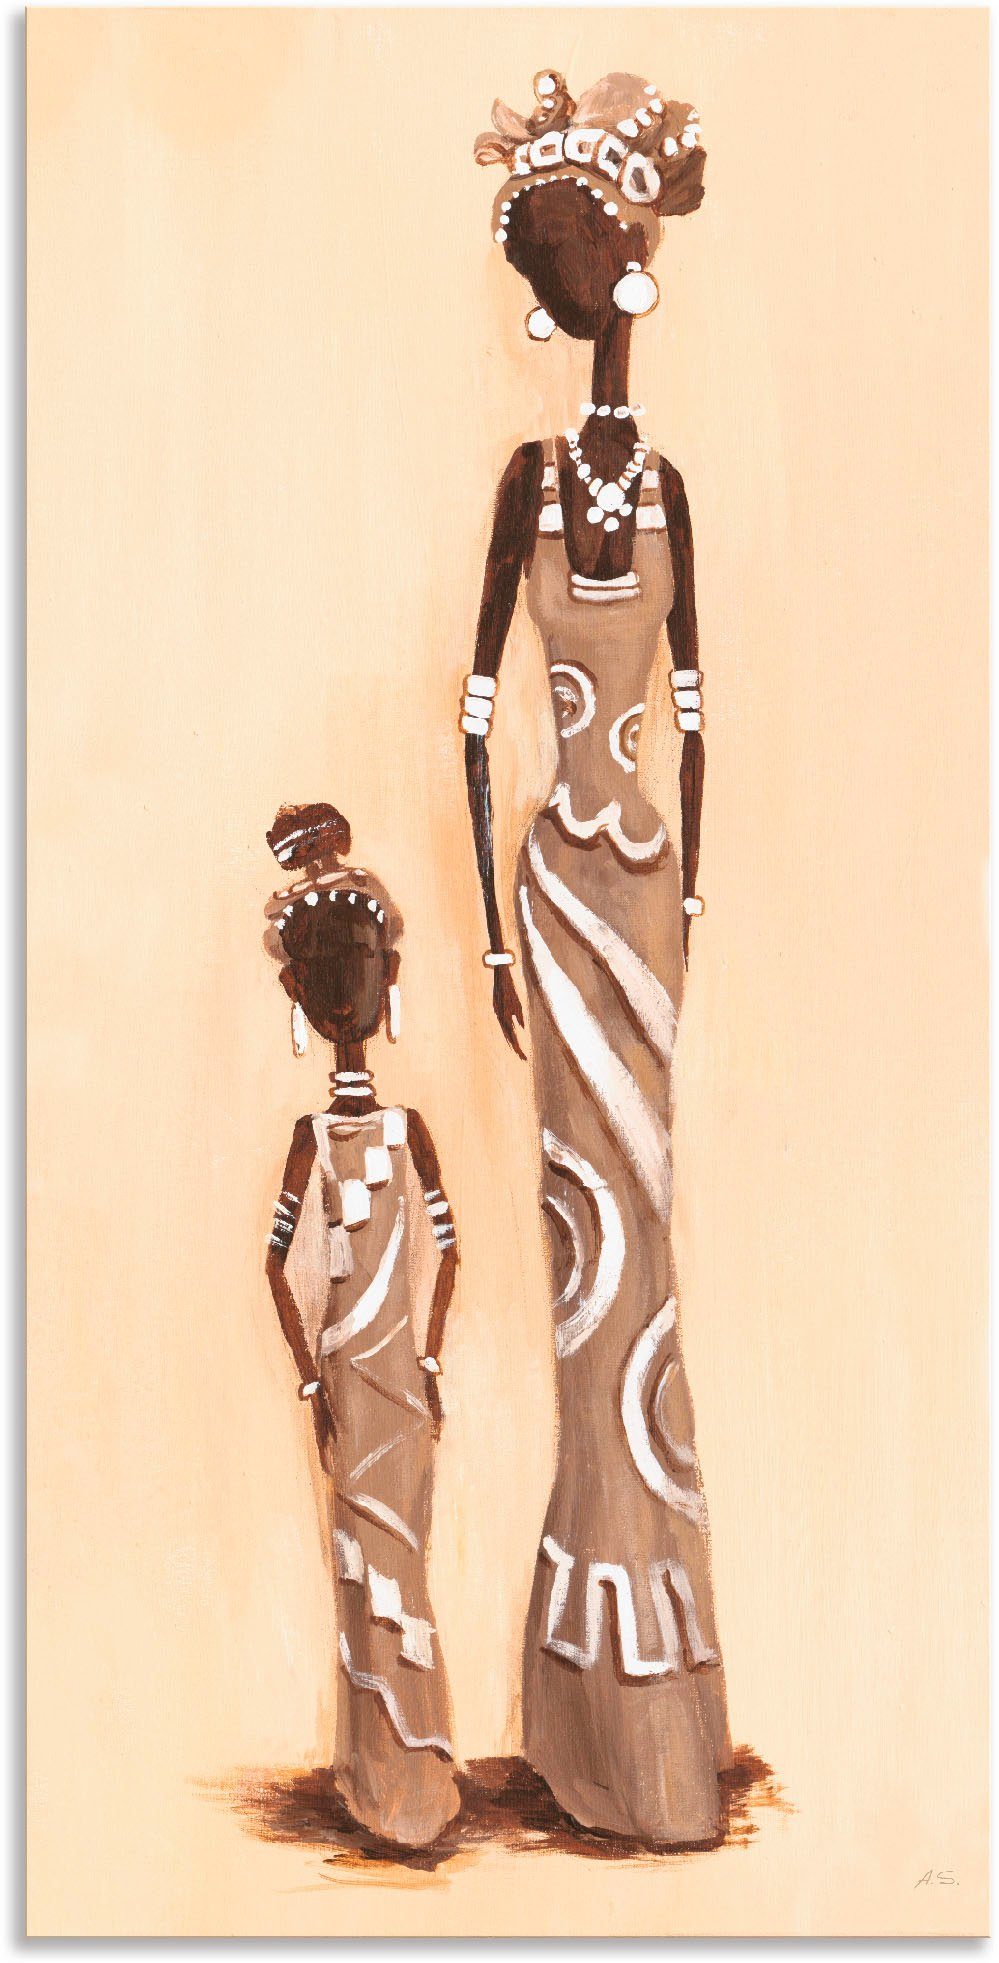 Artland Artprint Afrikaanse - met kind in vele afmetingen & productsoorten - artprint van aluminium / artprint voor buiten, artprint op linnen, poster, muursticker / wandfolie ook